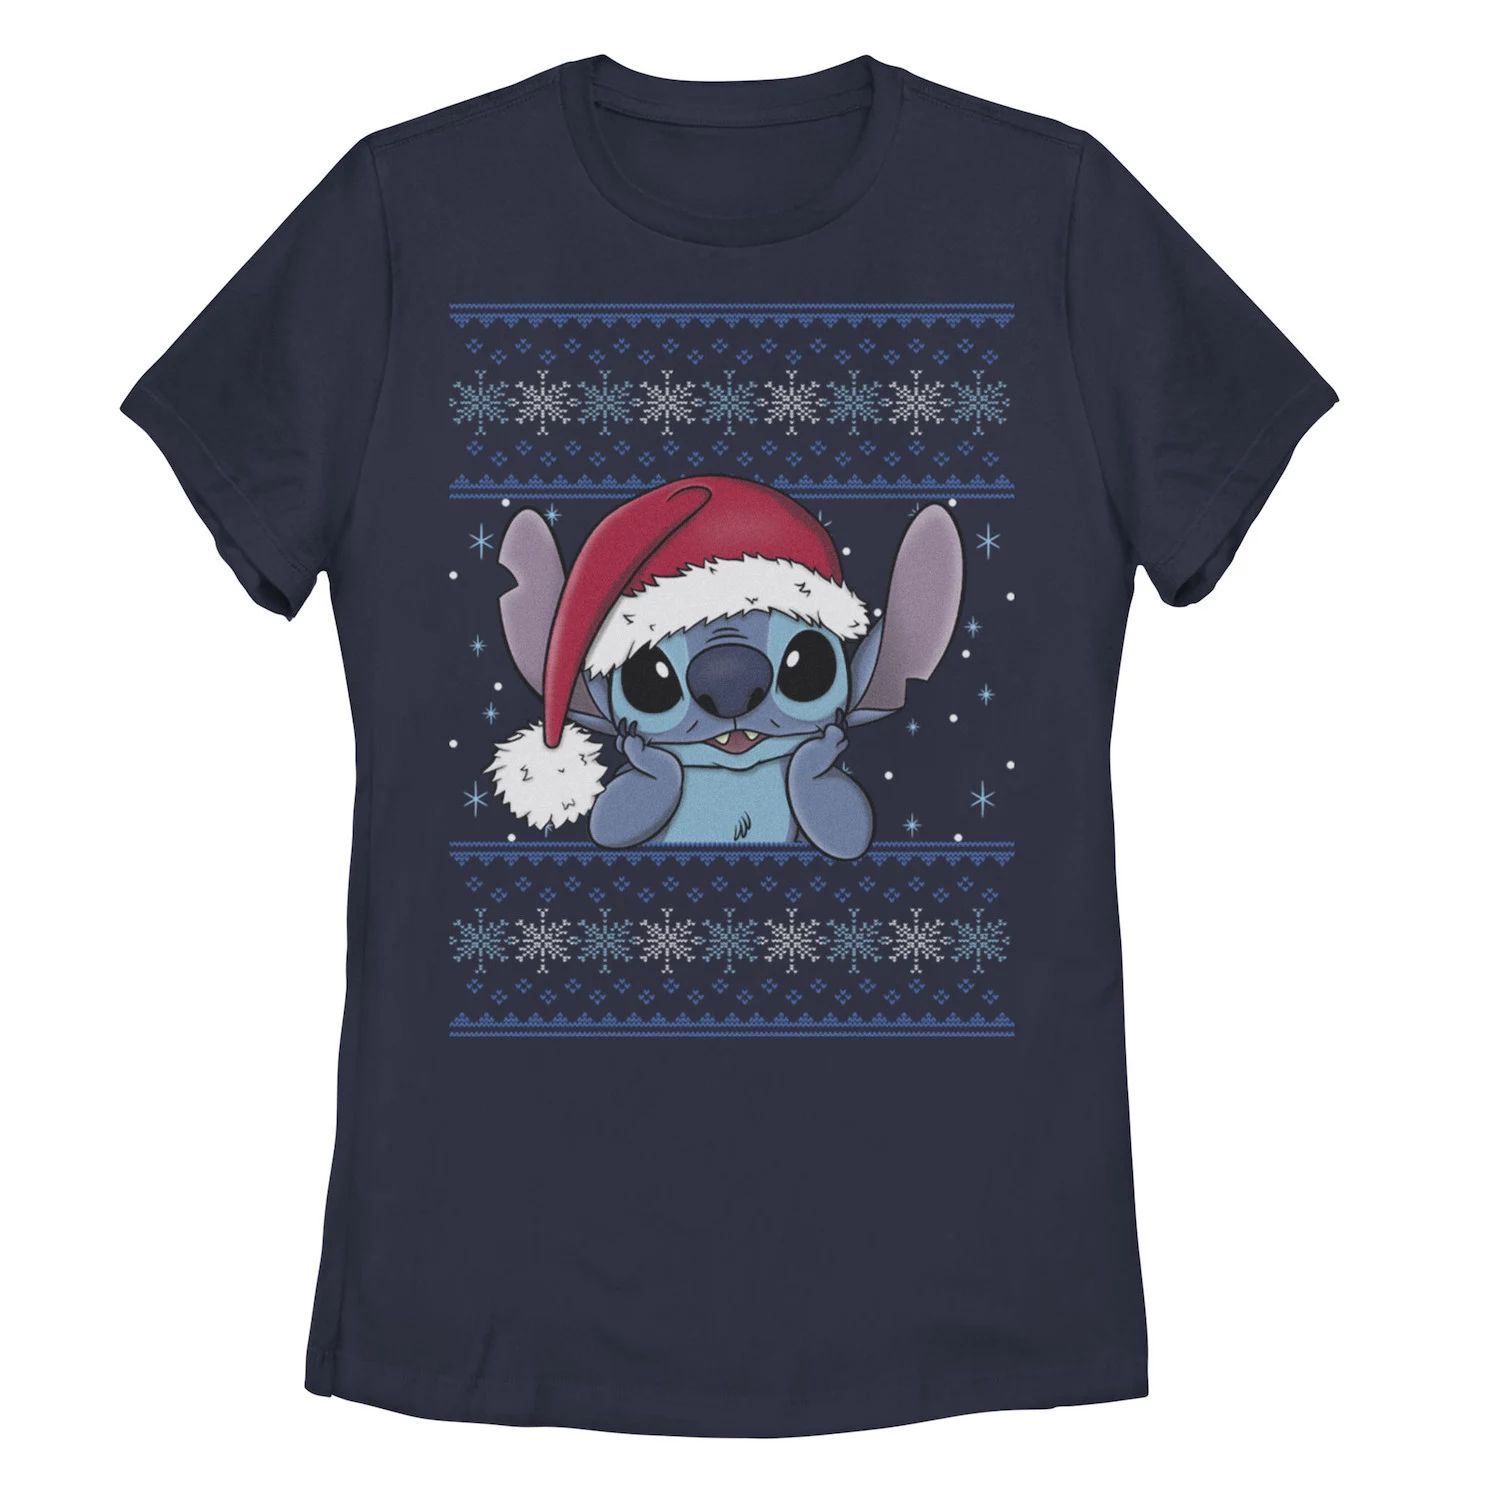 Детская футболка Disney Lilo & Stitch с рисунком «Рождественский стежок Ugly Sweater» Disney